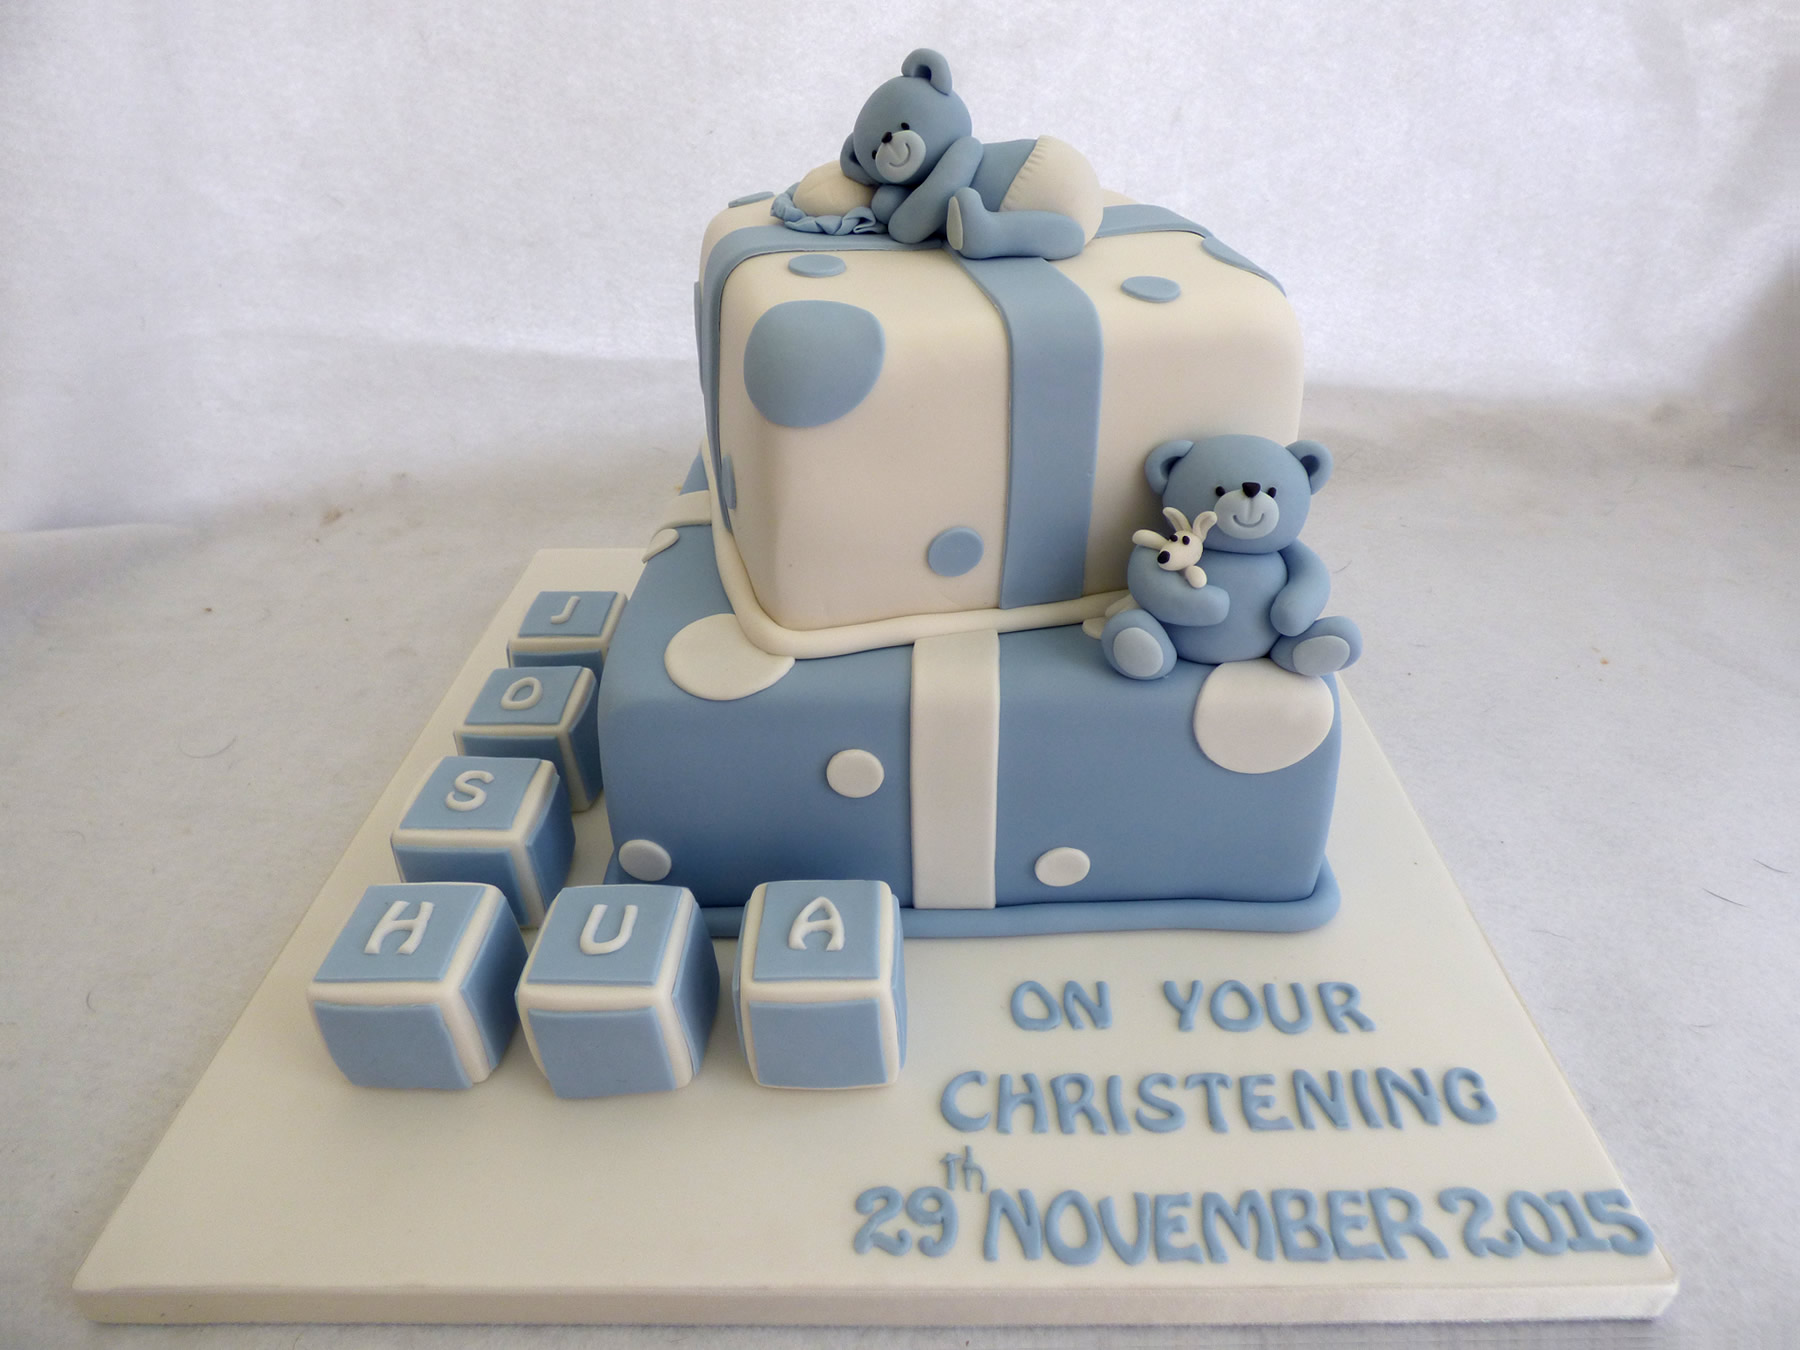 Girls christening cake - Decorated Cake by Gaynor's Cake - CakesDecor